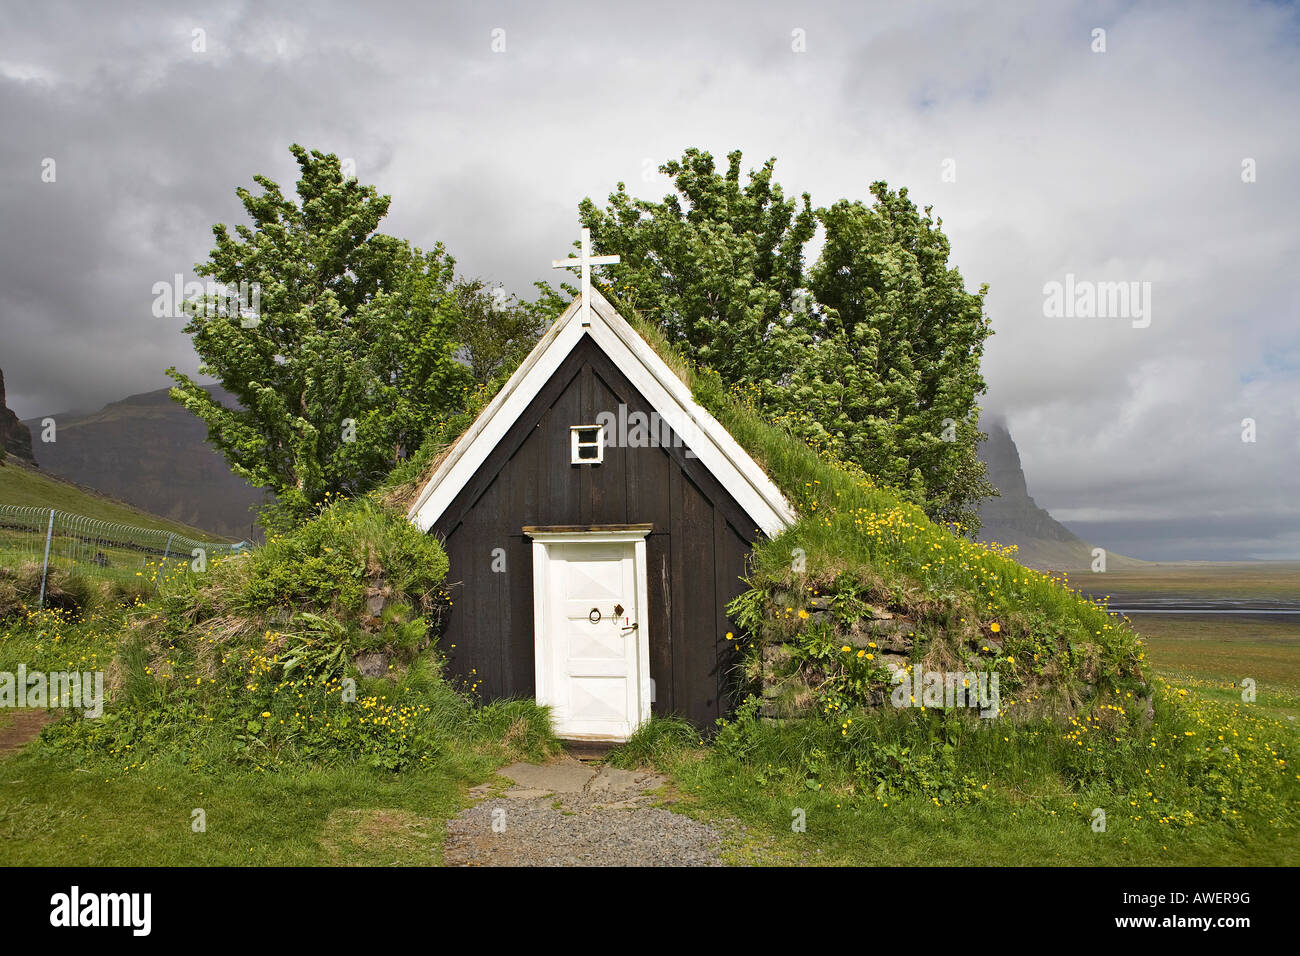 Seicentesca chiesa sod, il più piccolo in Islanda, Núpsstaður cortile, costa meridionale dell'Islanda, Oceano Atlantico Foto Stock